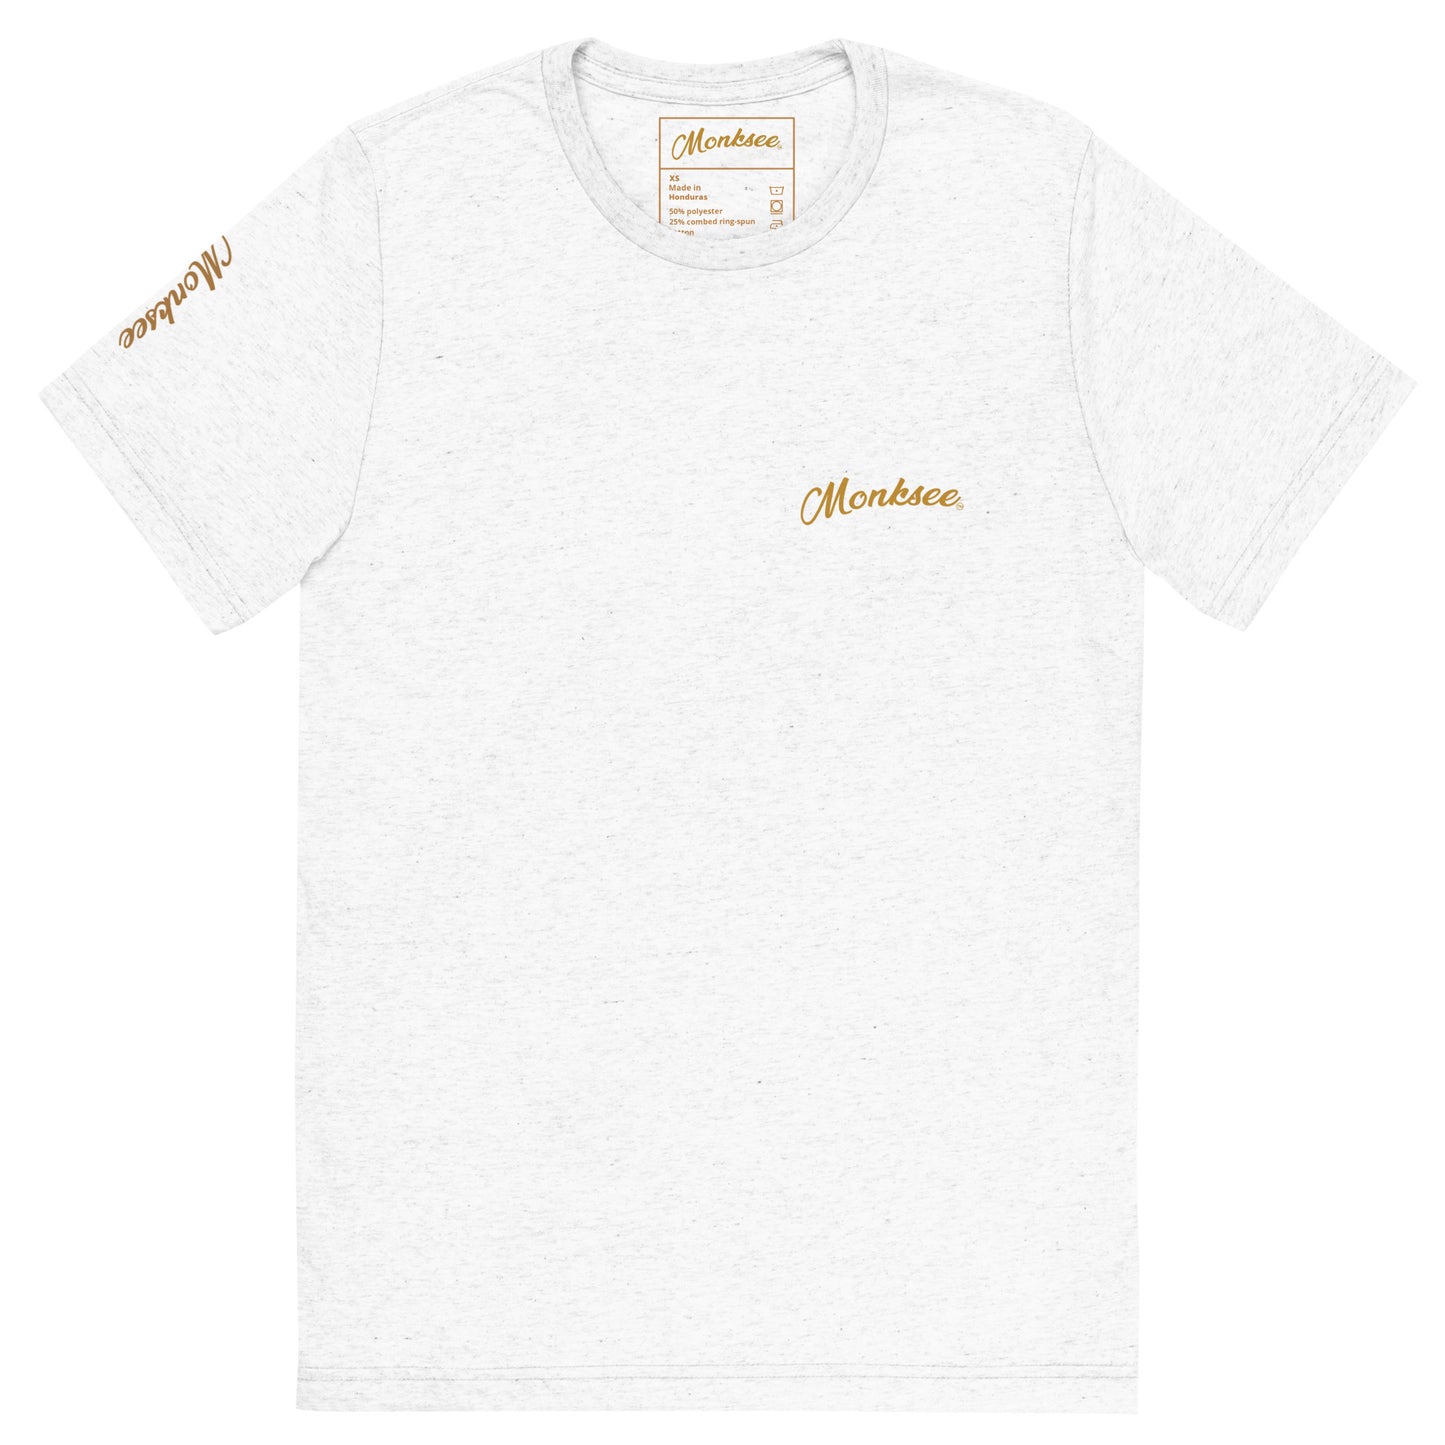 Gold Digger t-shirt.